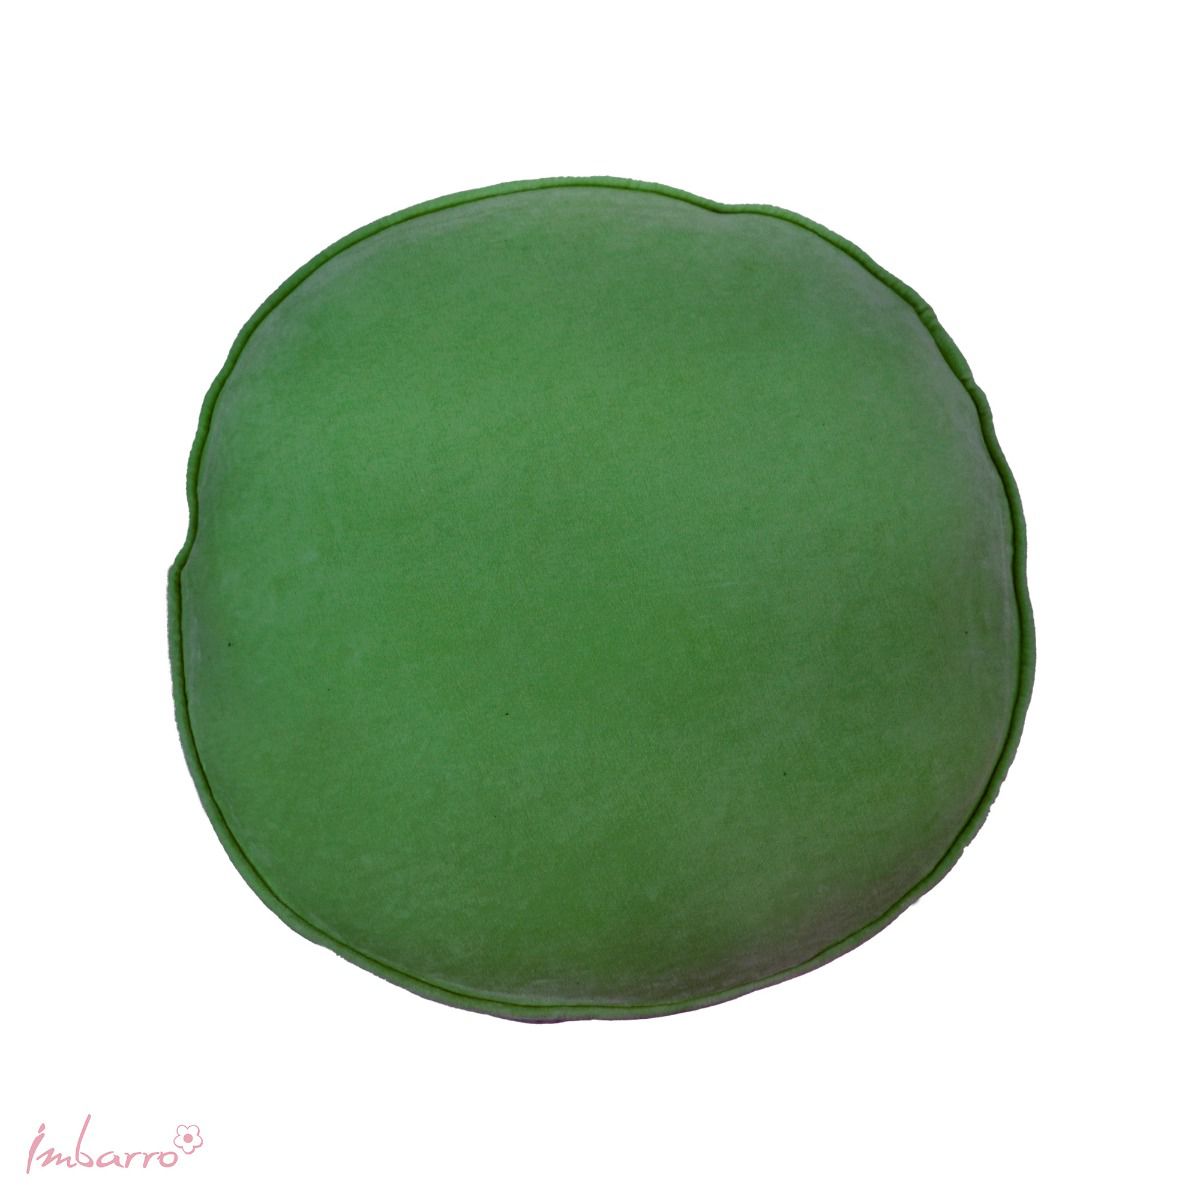 Imbarro - Sierkussen 'Lala' (Groen, Ø45cm)